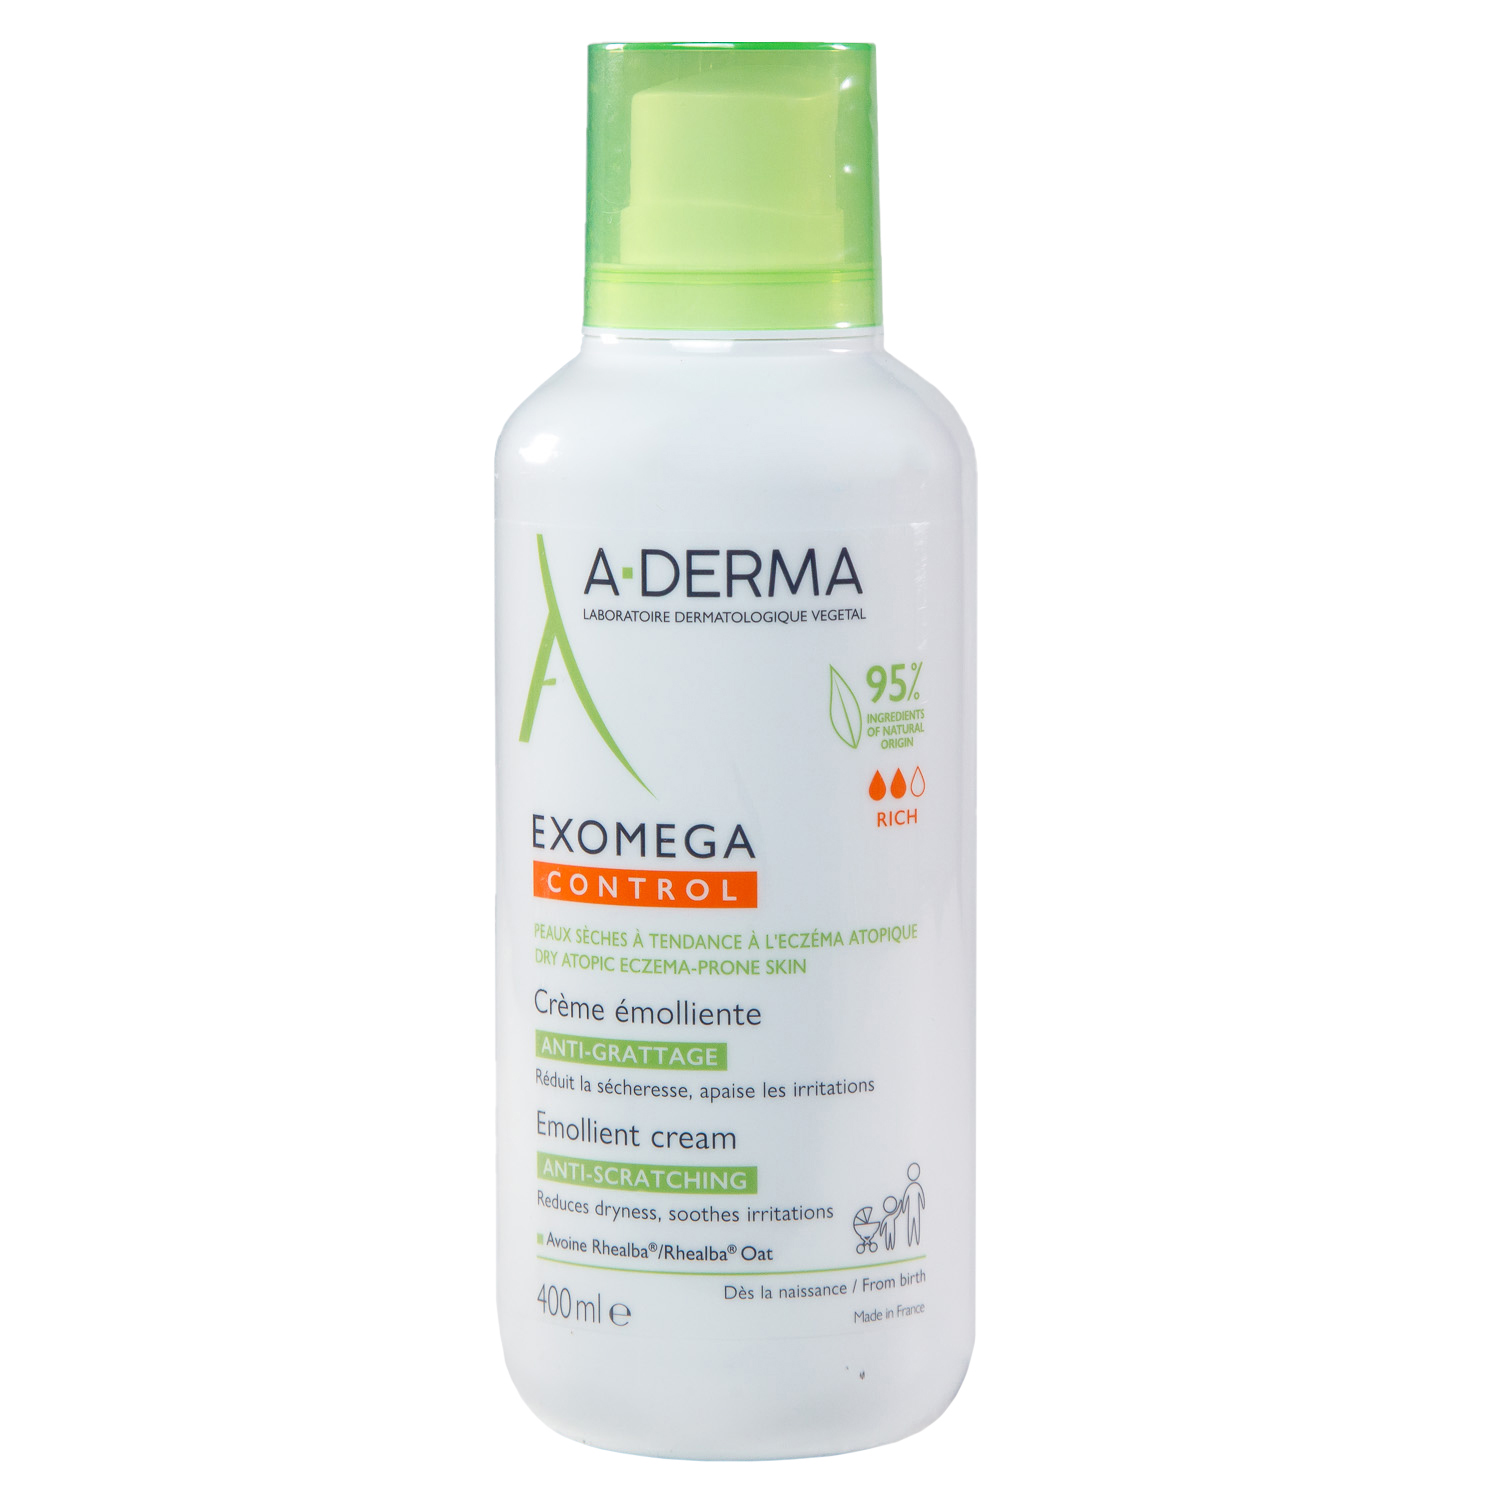 A-Derma Смягчающий крем для лица и тела, 400 мл (A-Derma, Exomega Control) цена и фото